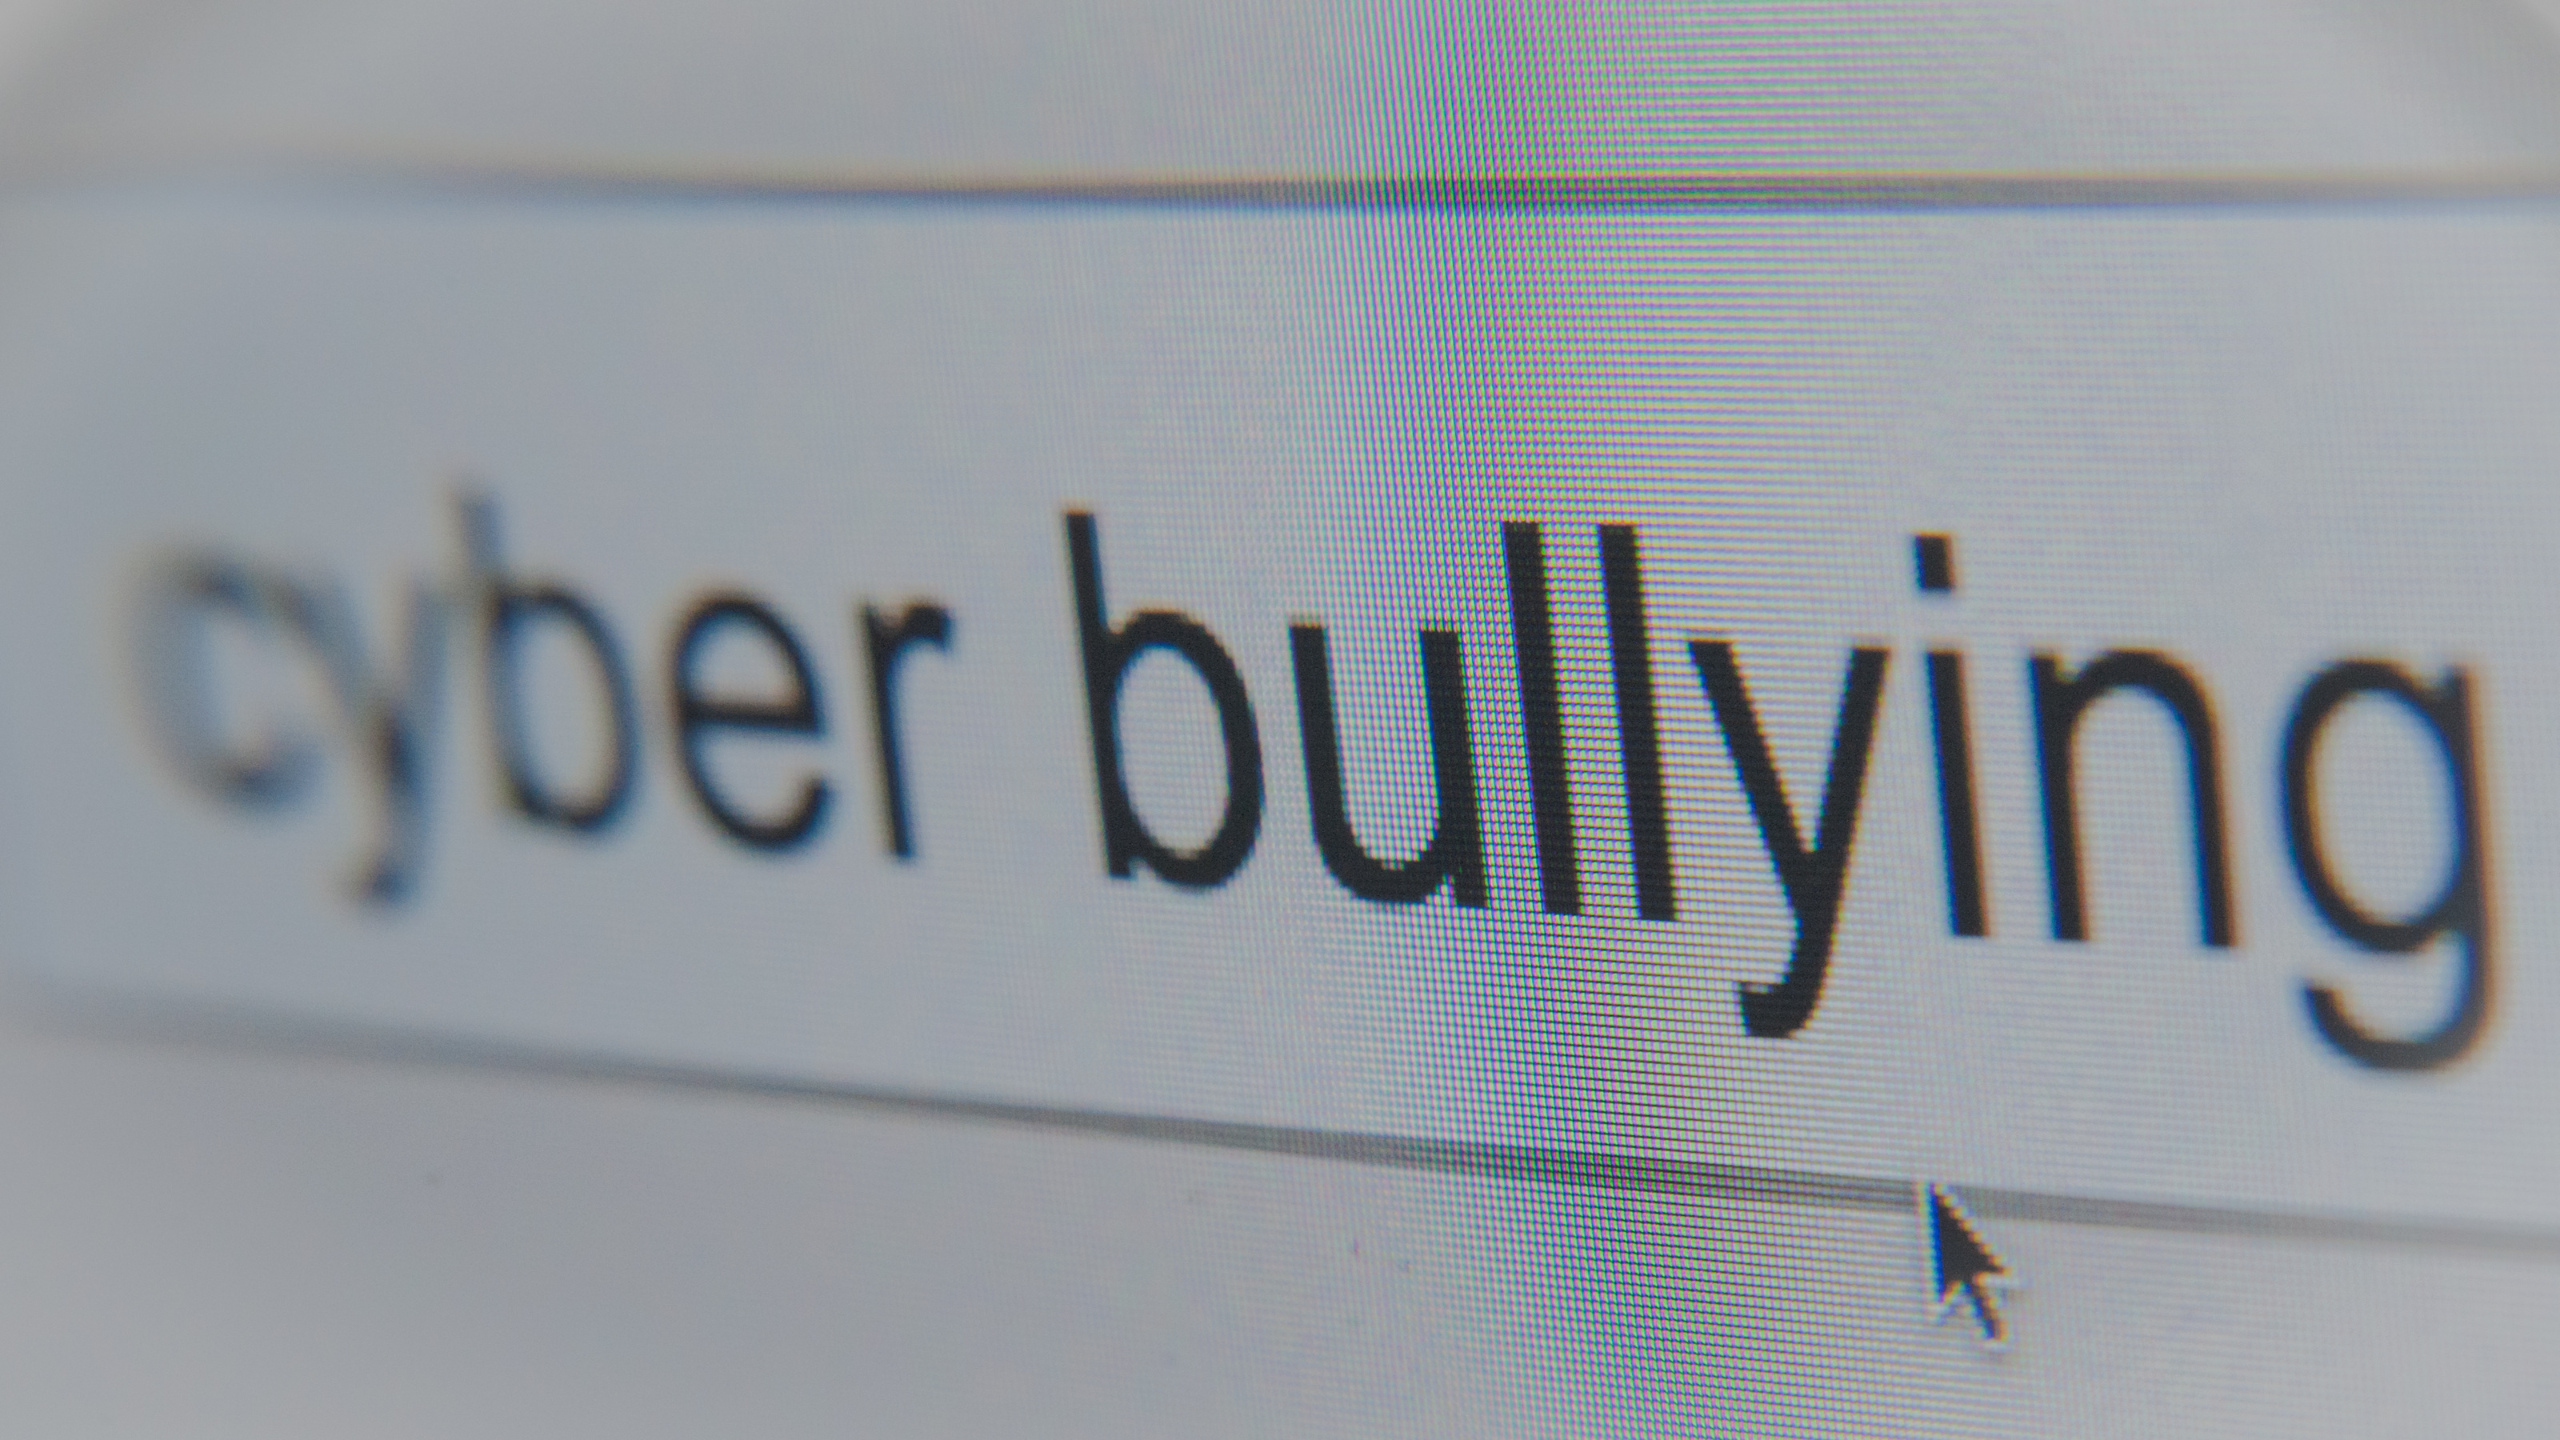 Apa Itu Cyber Bullying Dan Apa Bahayanya Untuk Kesehatan